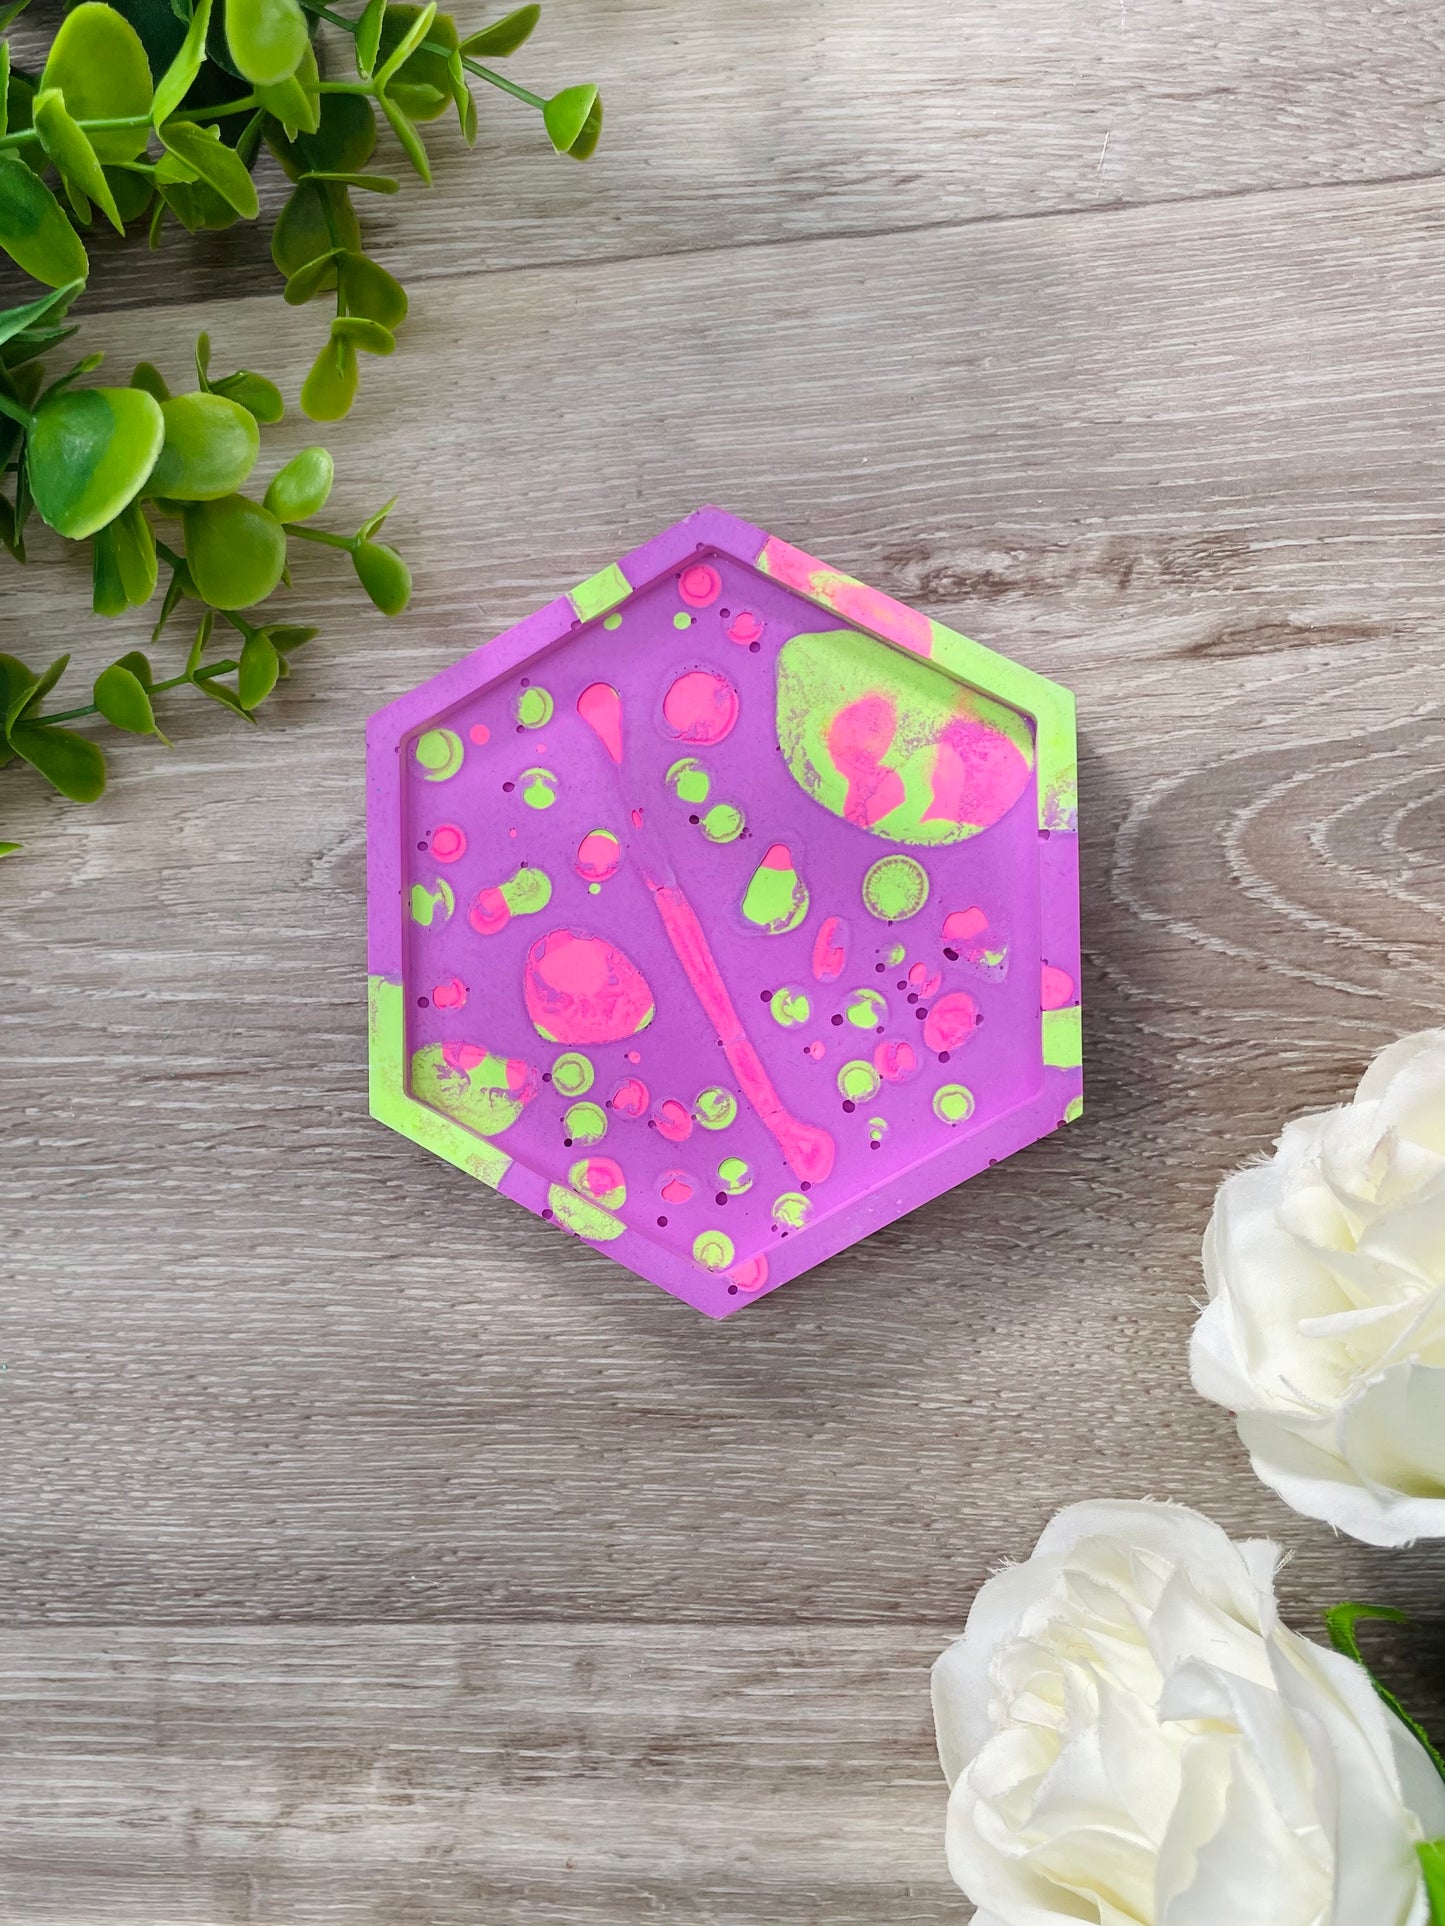 Hexagon Dish or Coaster